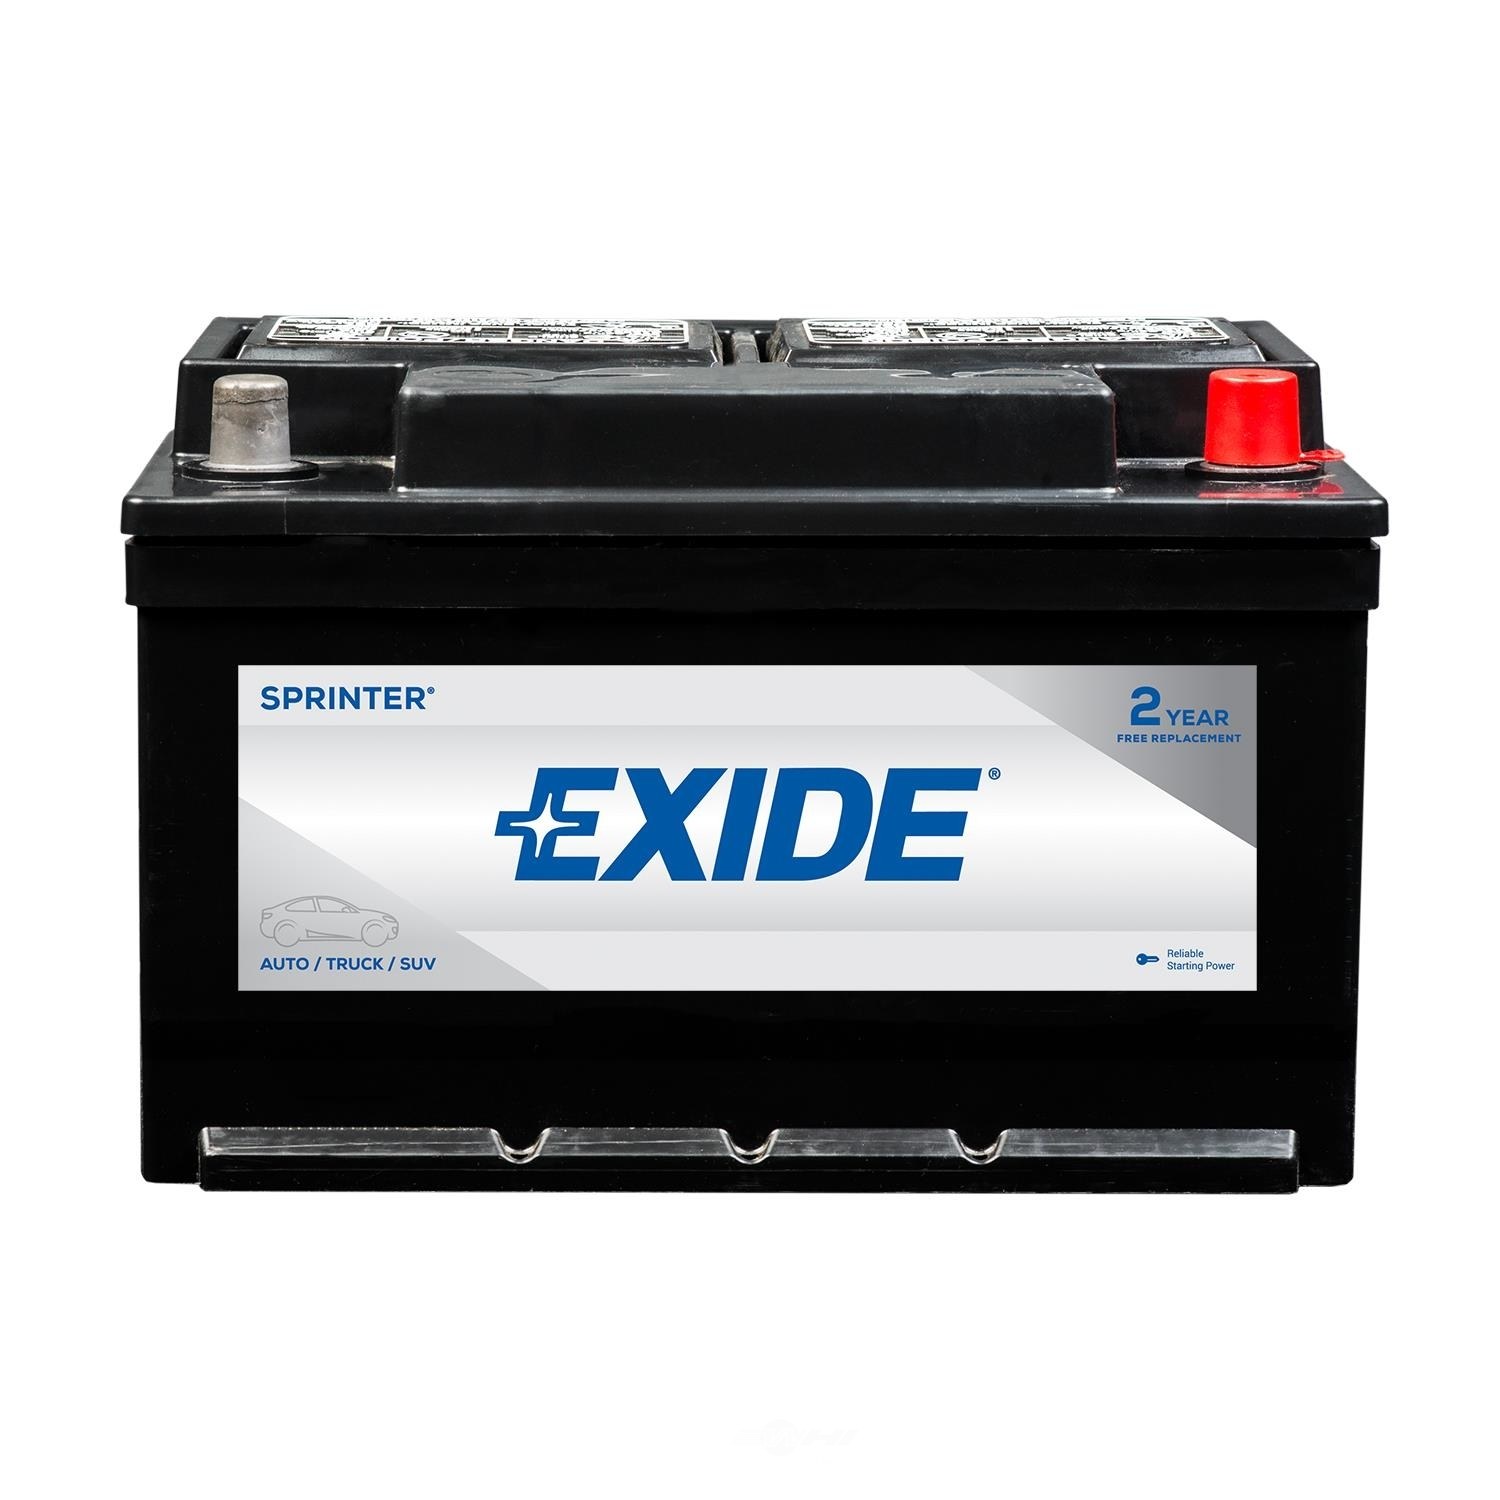 EXIDE BATTERIES - SPRINTER - CCA: 600 - EX1 S40R